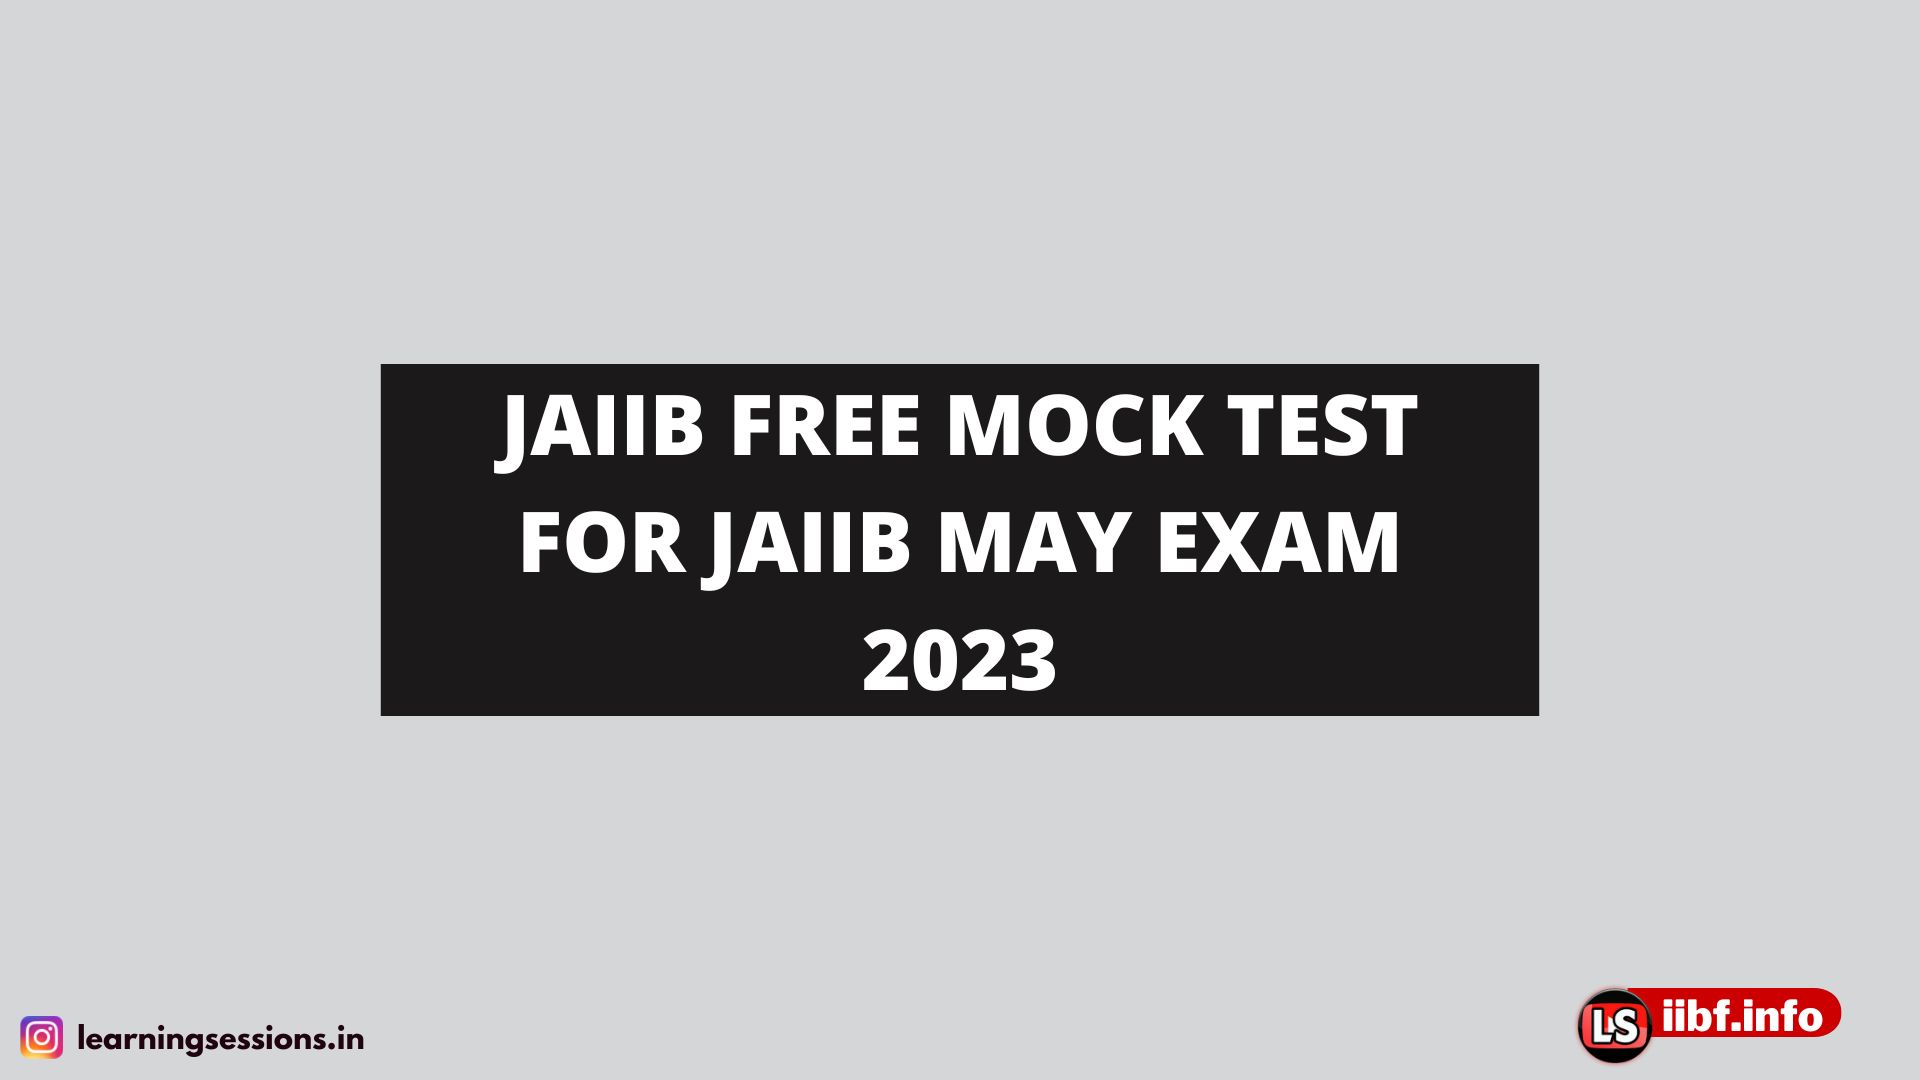 FREE JAIIB MOCK TEST 2022